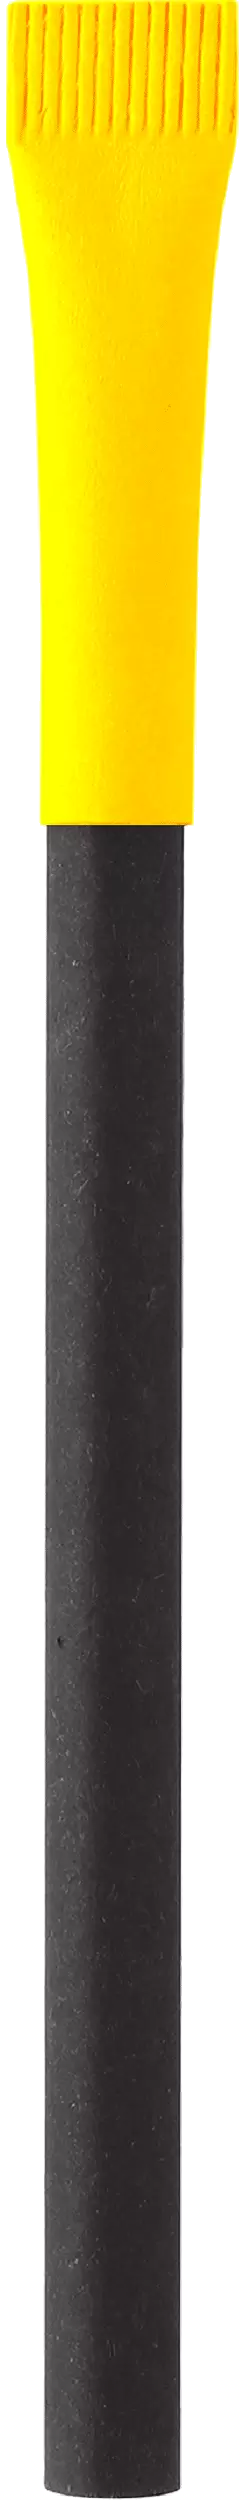 Ручка KRAFT MIX Черная с желтым 3011-08-04